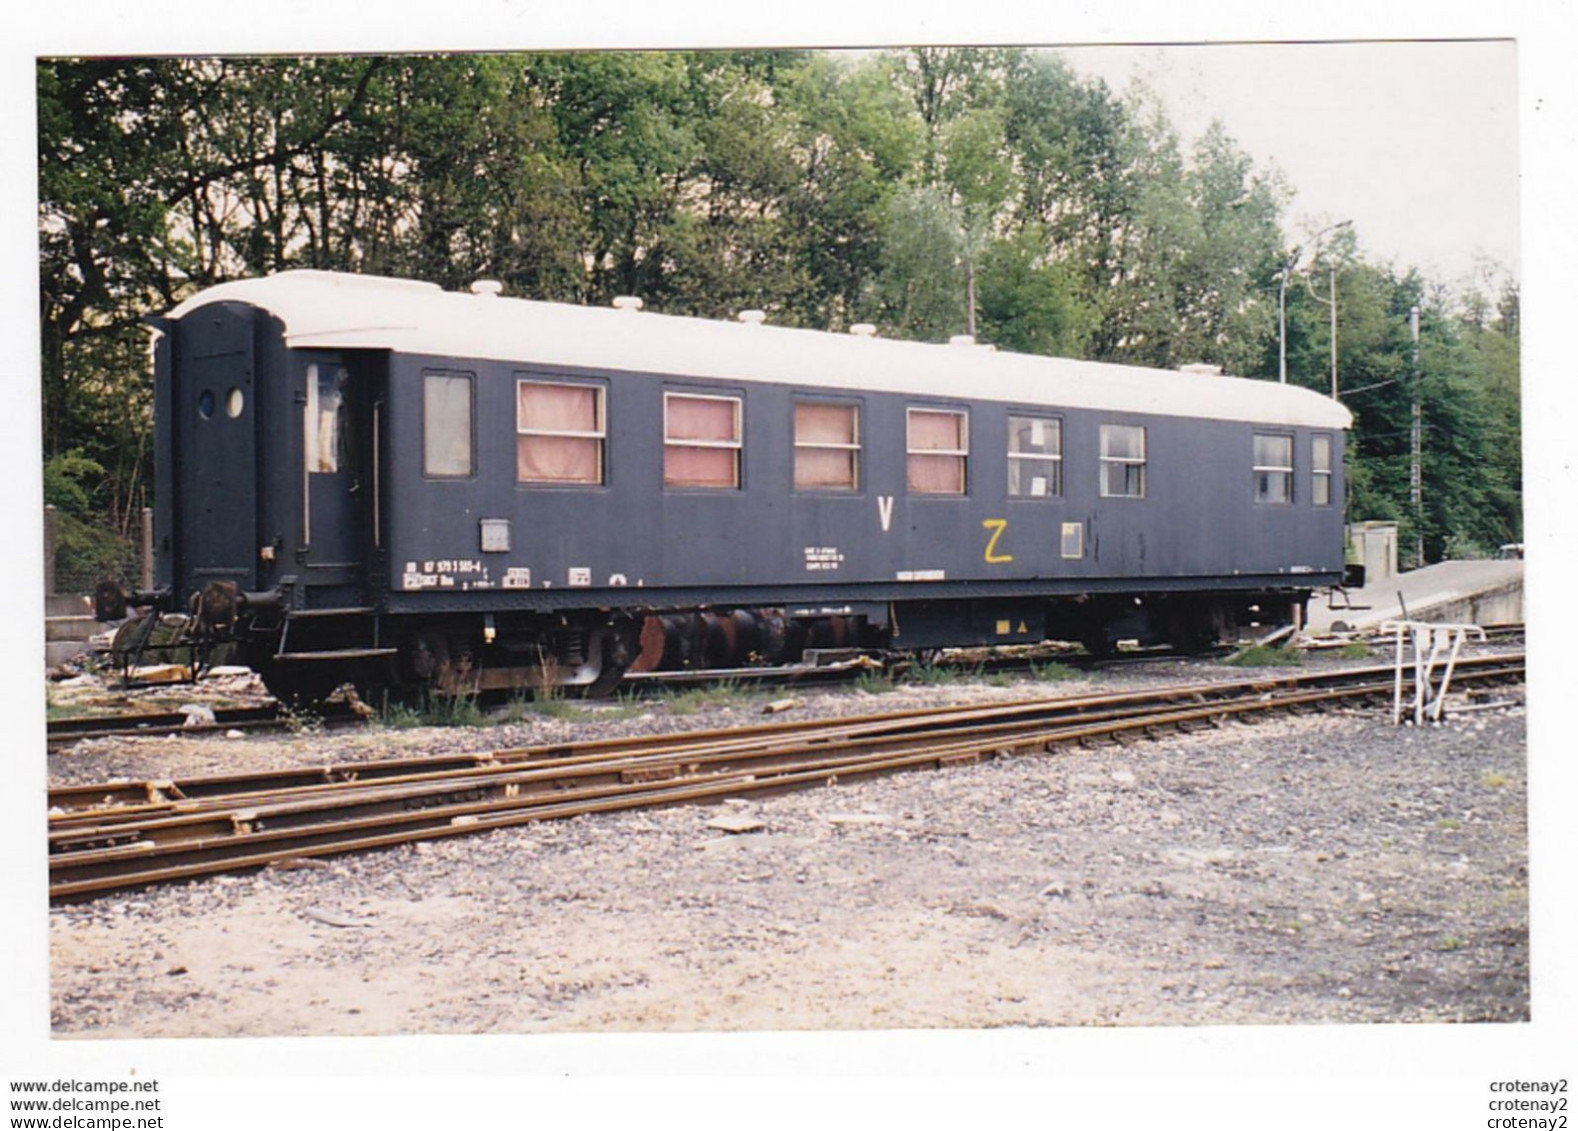 PHOTO Originale TRAINS Wagon Fourgon Ou Voiture SNCF Du Service V Classée Z Gare D'attache PARIS BERCY Non Datée - Trains